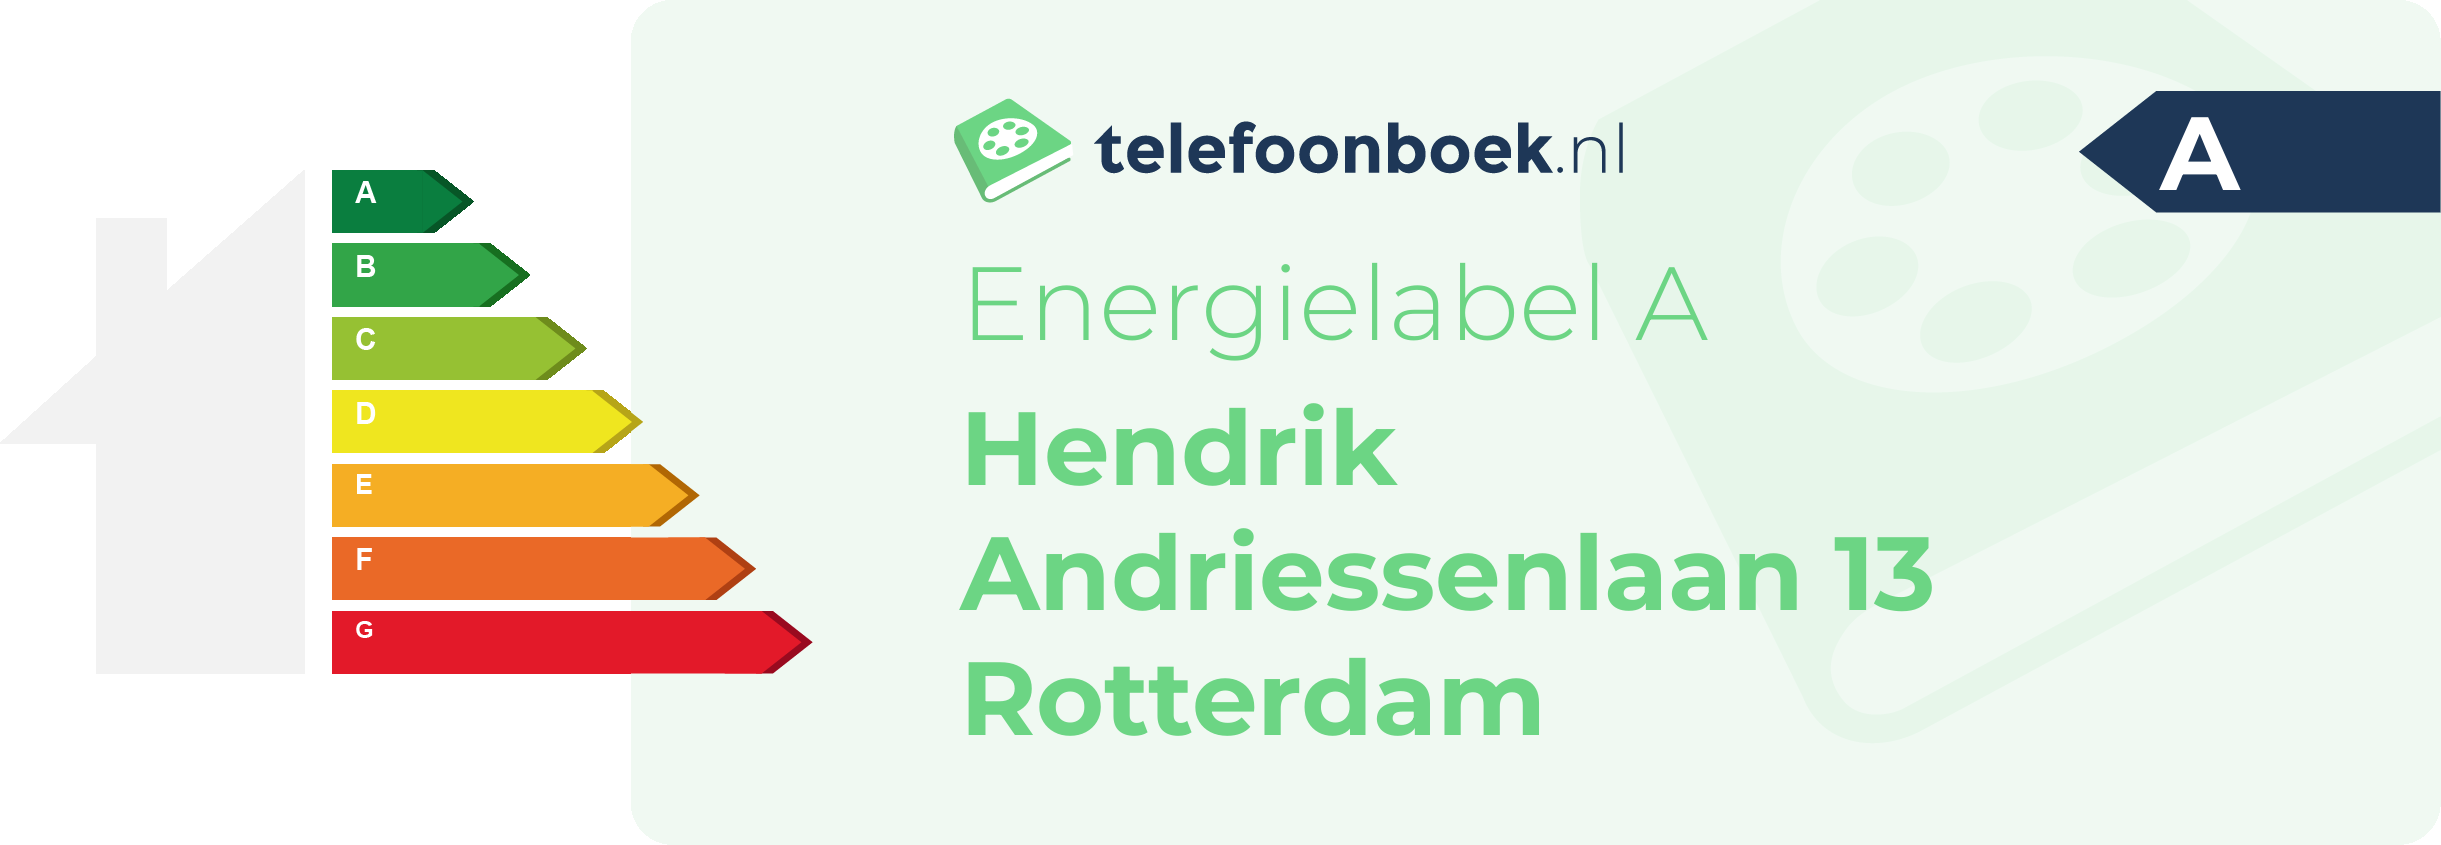 Energielabel Hendrik Andriessenlaan 13 Rotterdam